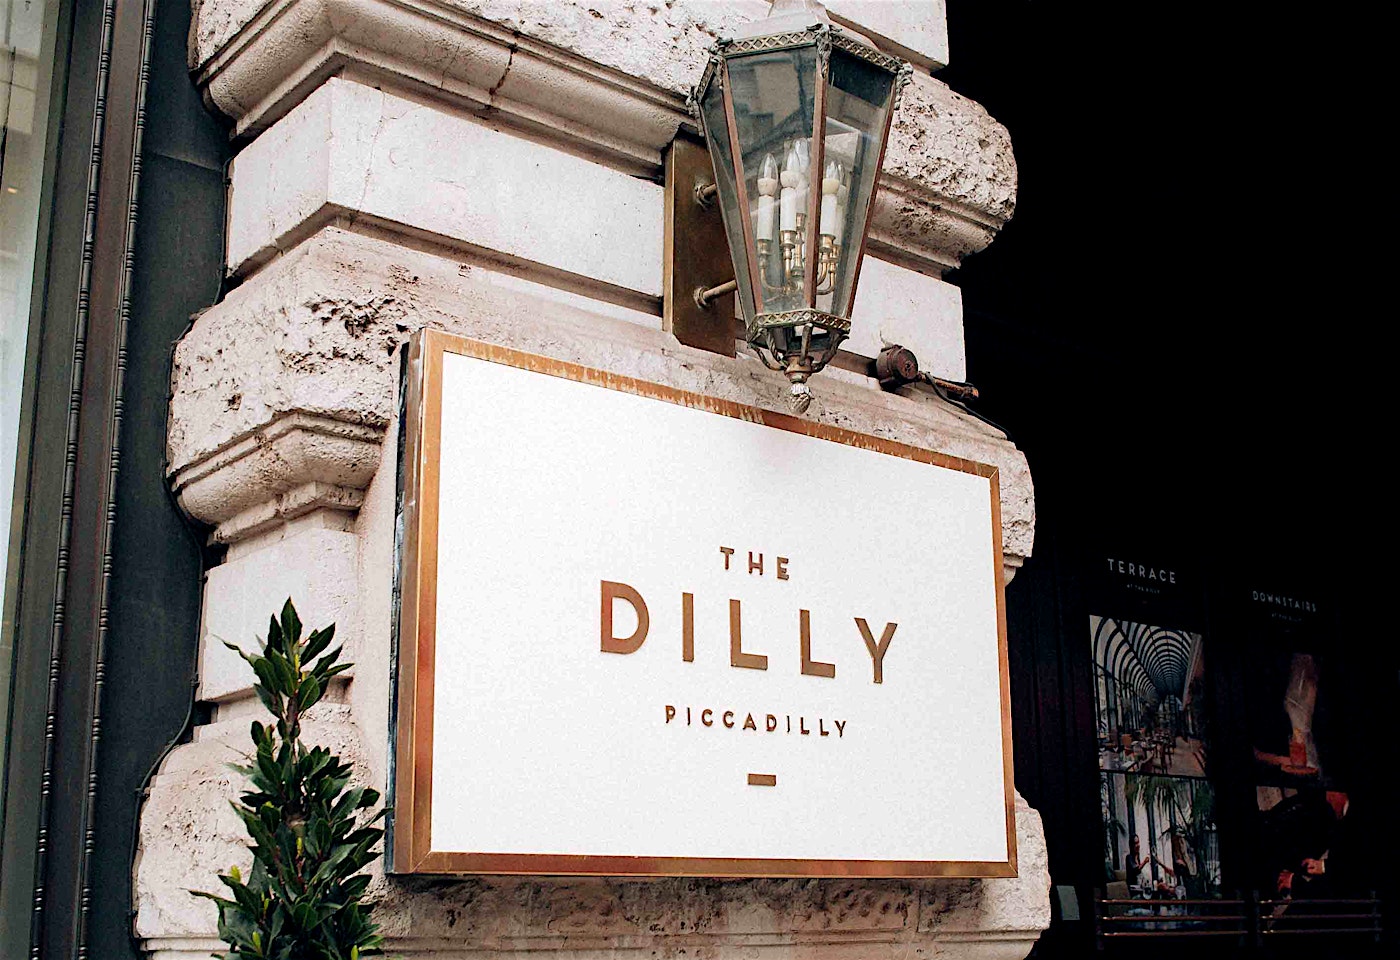 The Dilly Mayfair cocktail bar